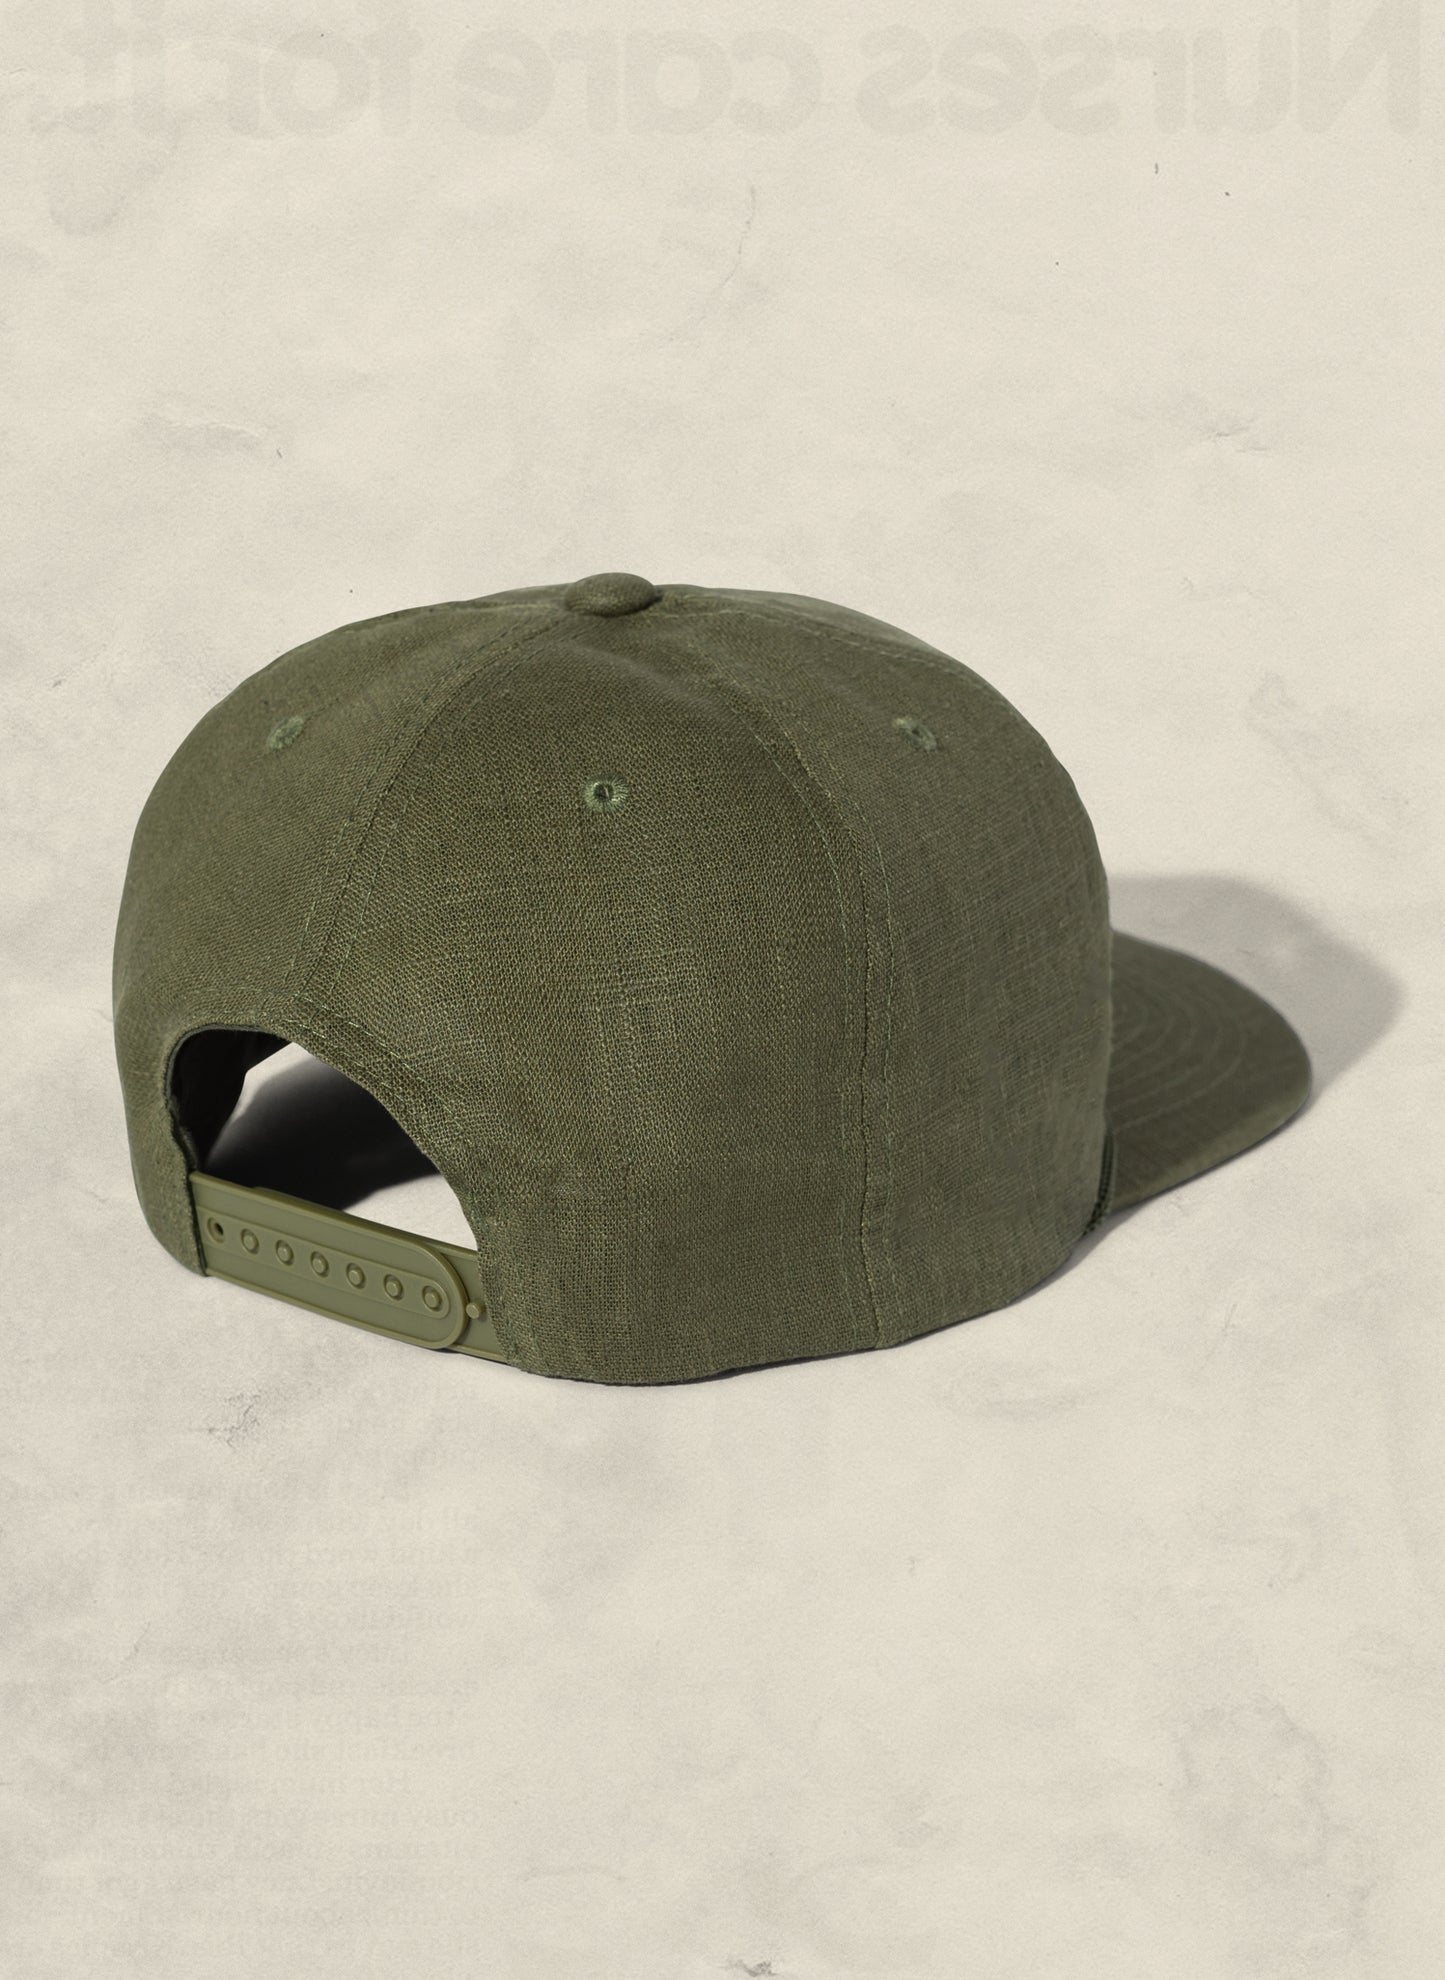 Hemp Field Trip Trucker Hat – colors) weld mfg (+4